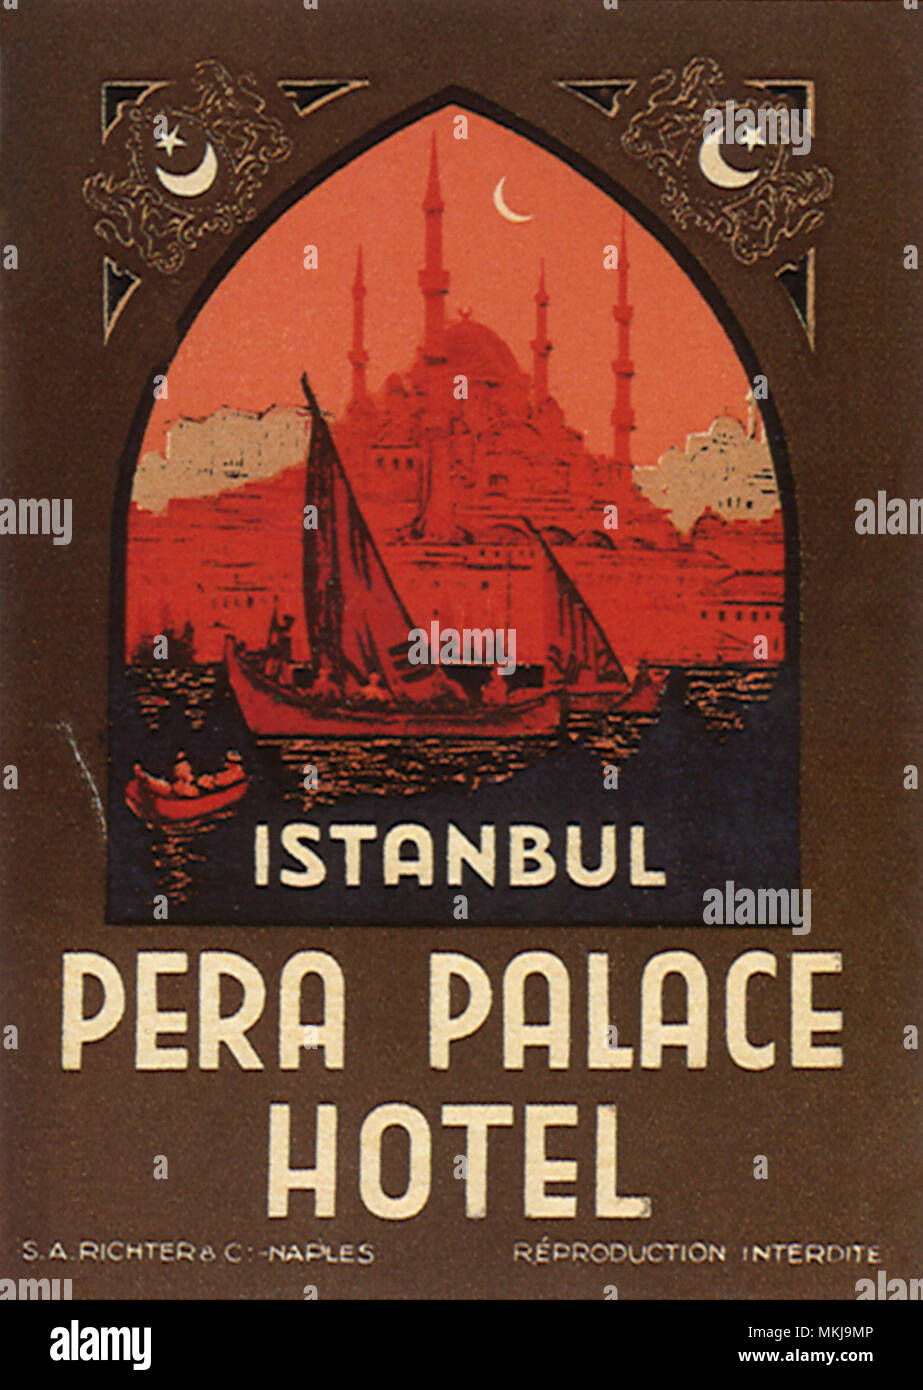 Pera Palace Hotel Stock Photo